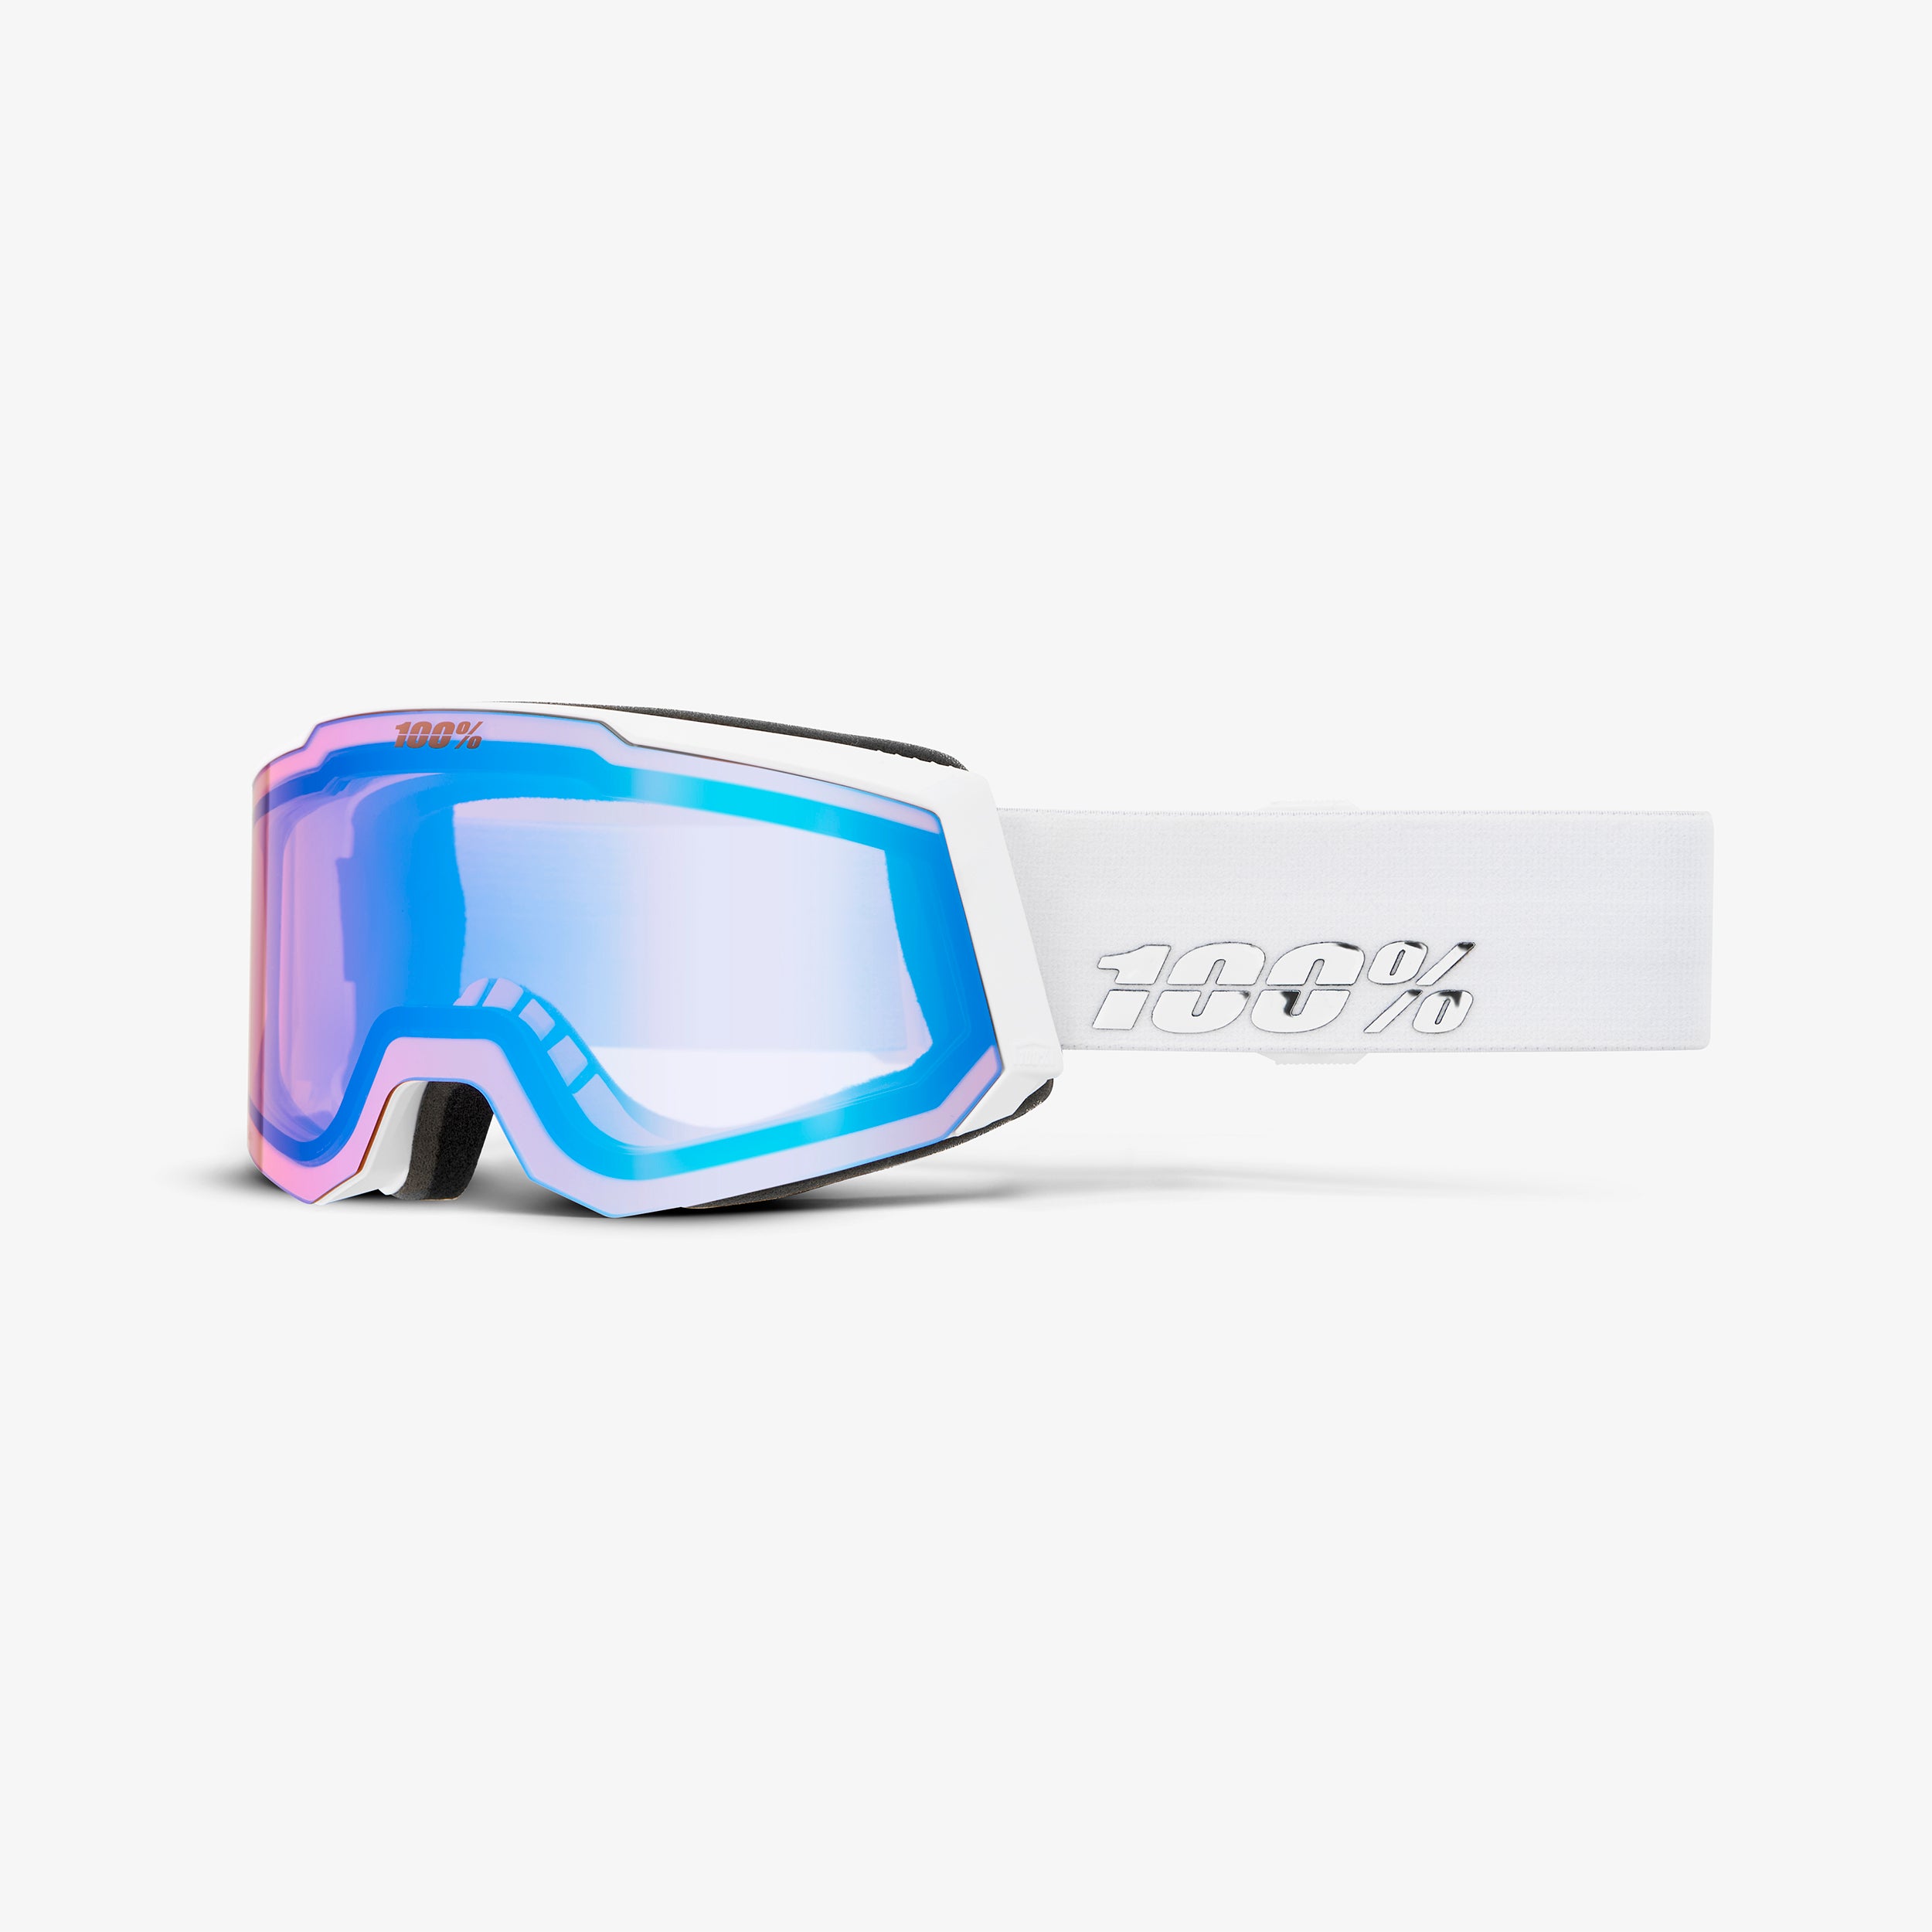 SNOWCRAFT S AF HiPER Goggle White/Lavender - Mirror Lavender Lens